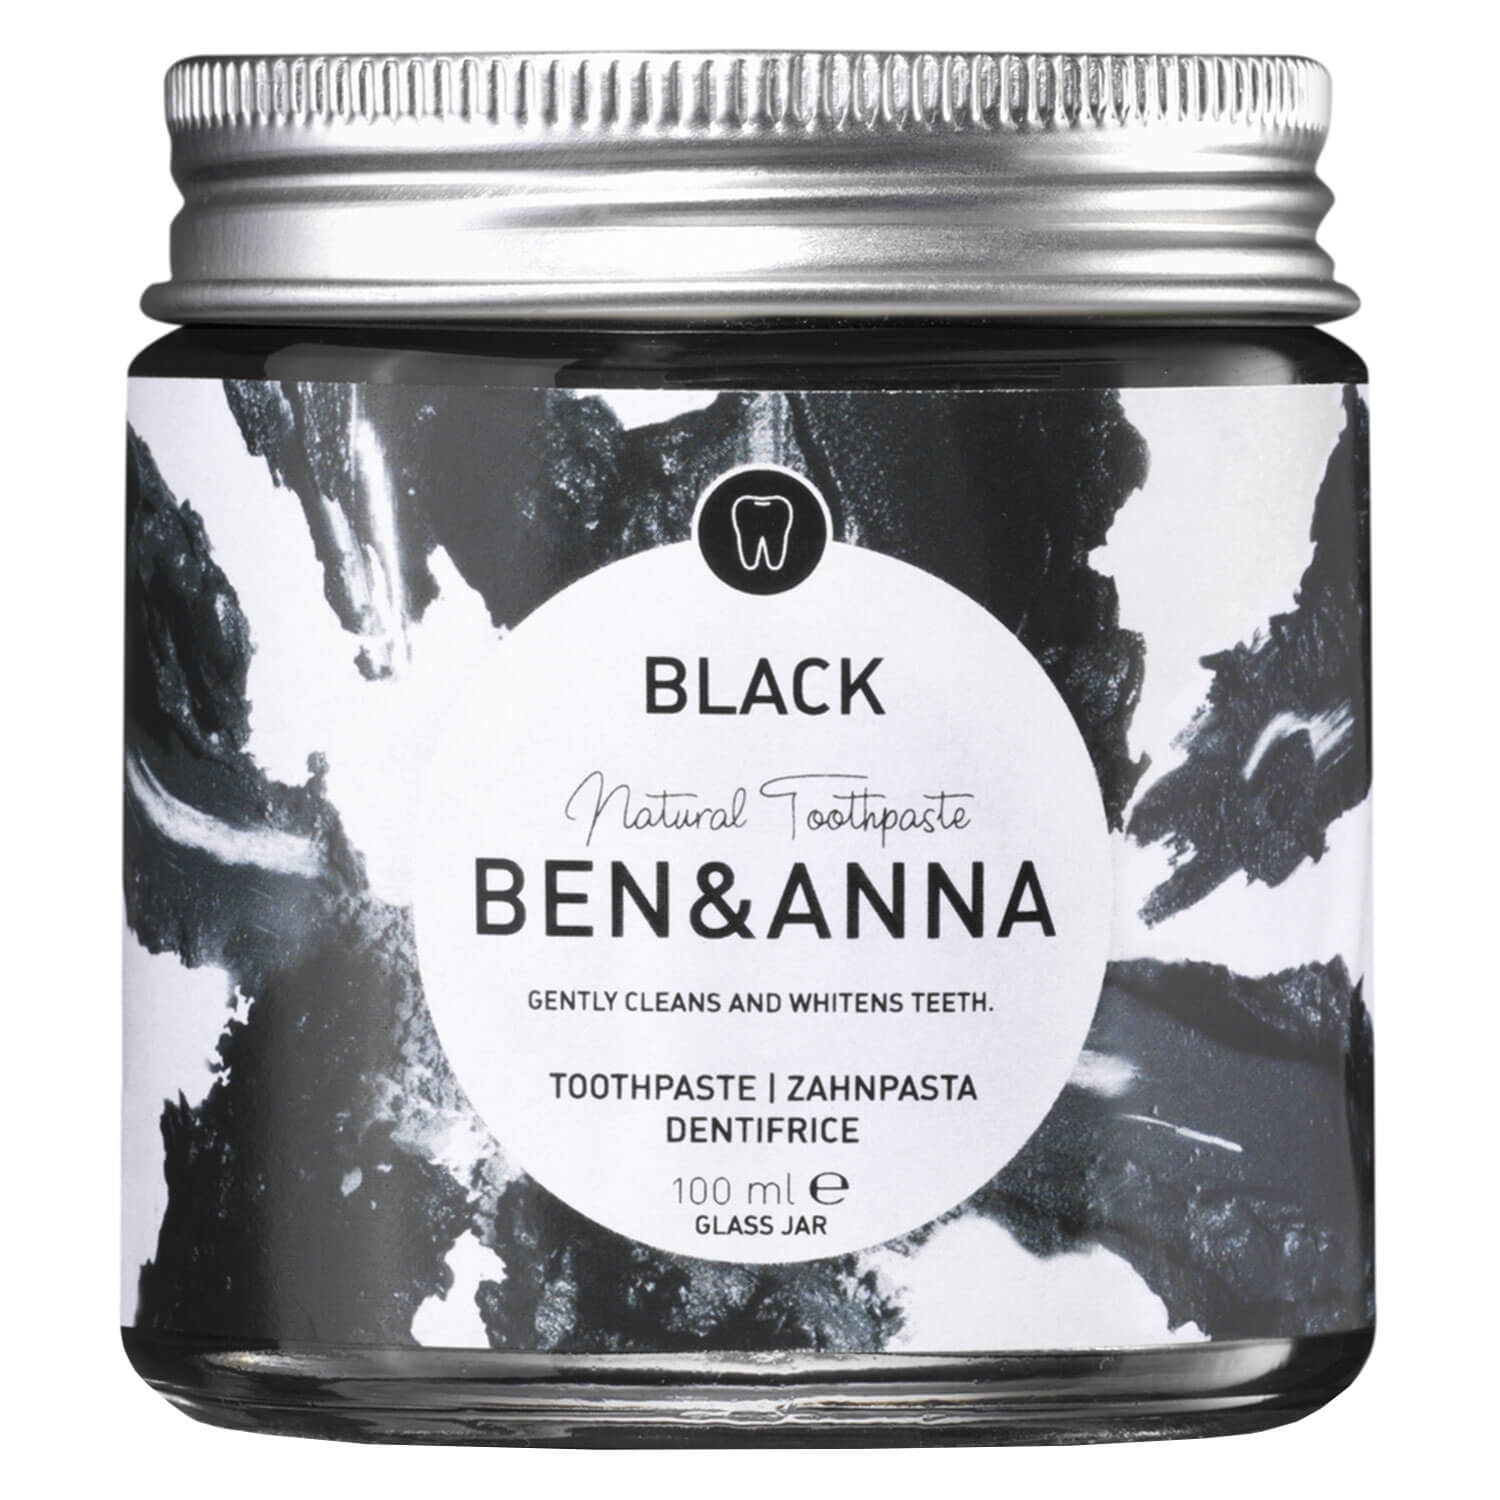 Produktbild von BEN&ANNA - Toothpaste Black